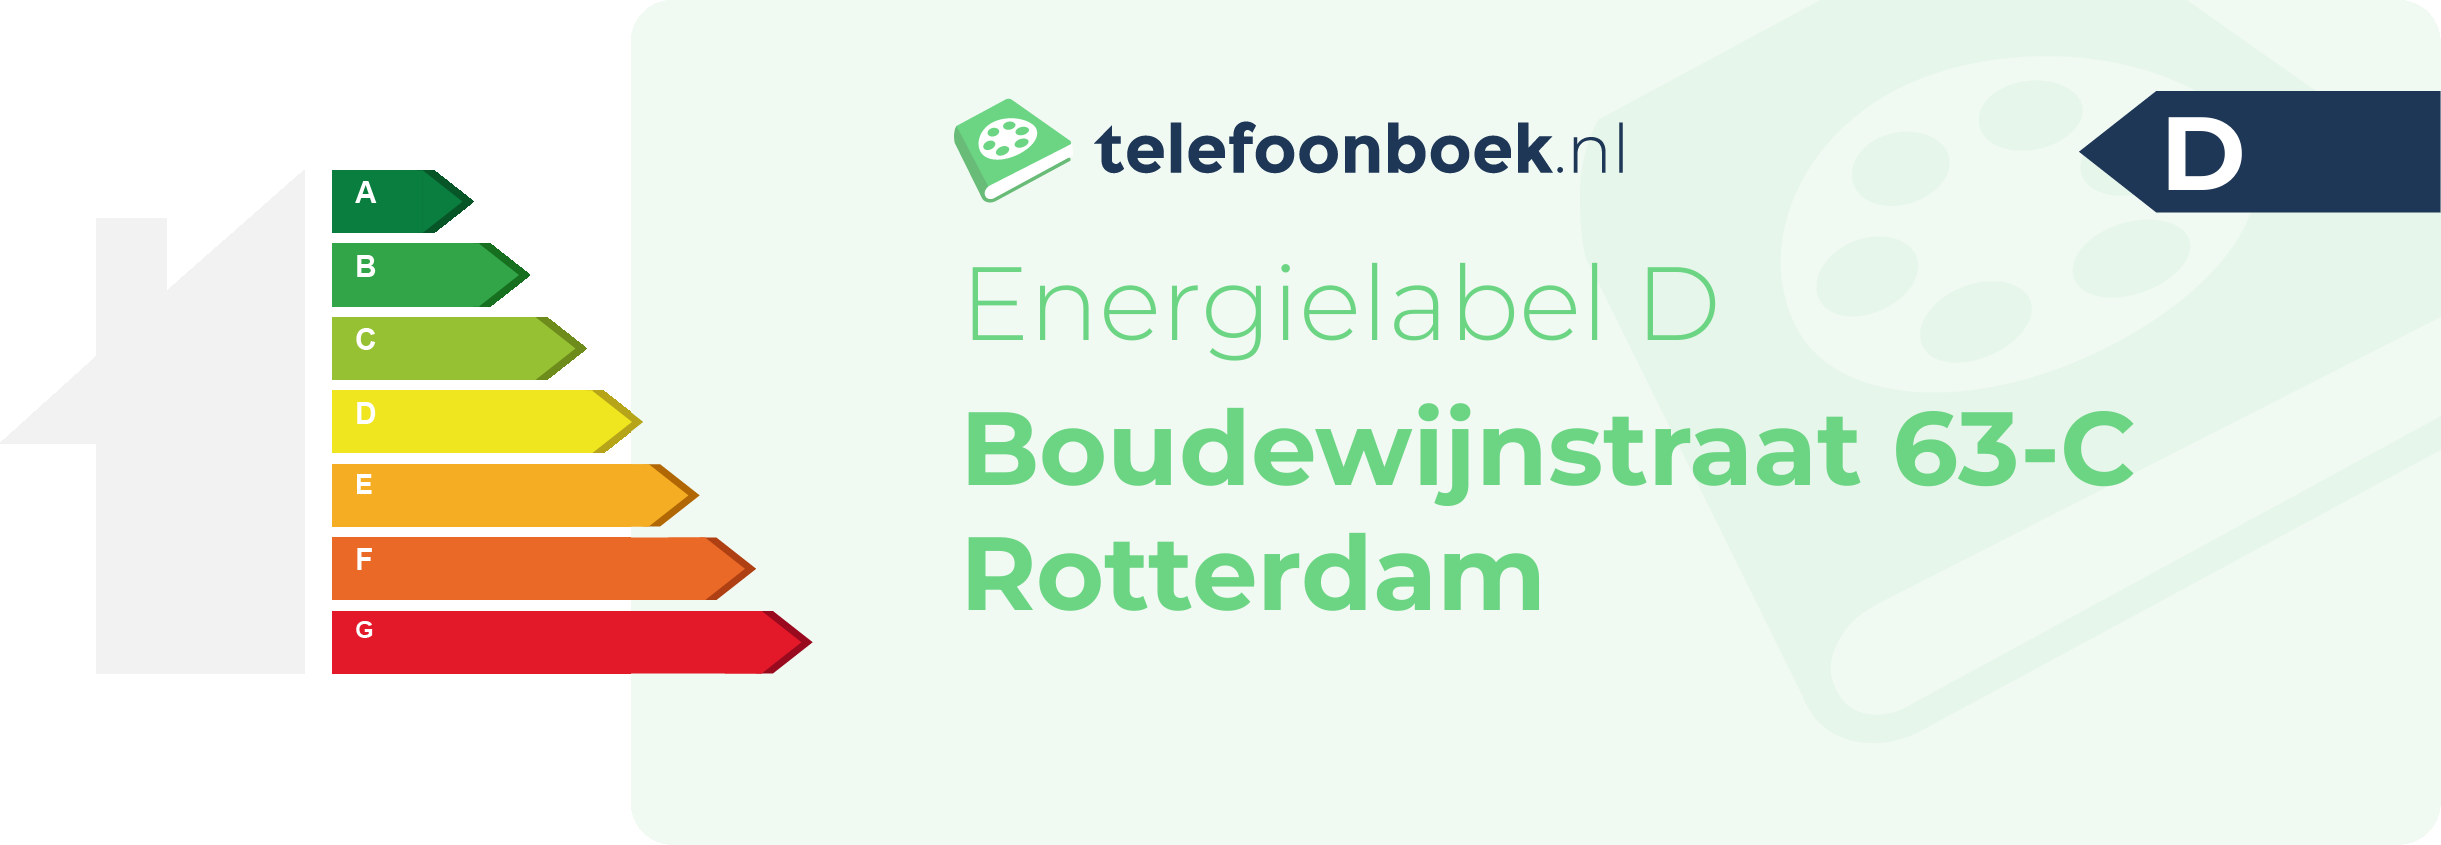 Energielabel Boudewijnstraat 63-C Rotterdam